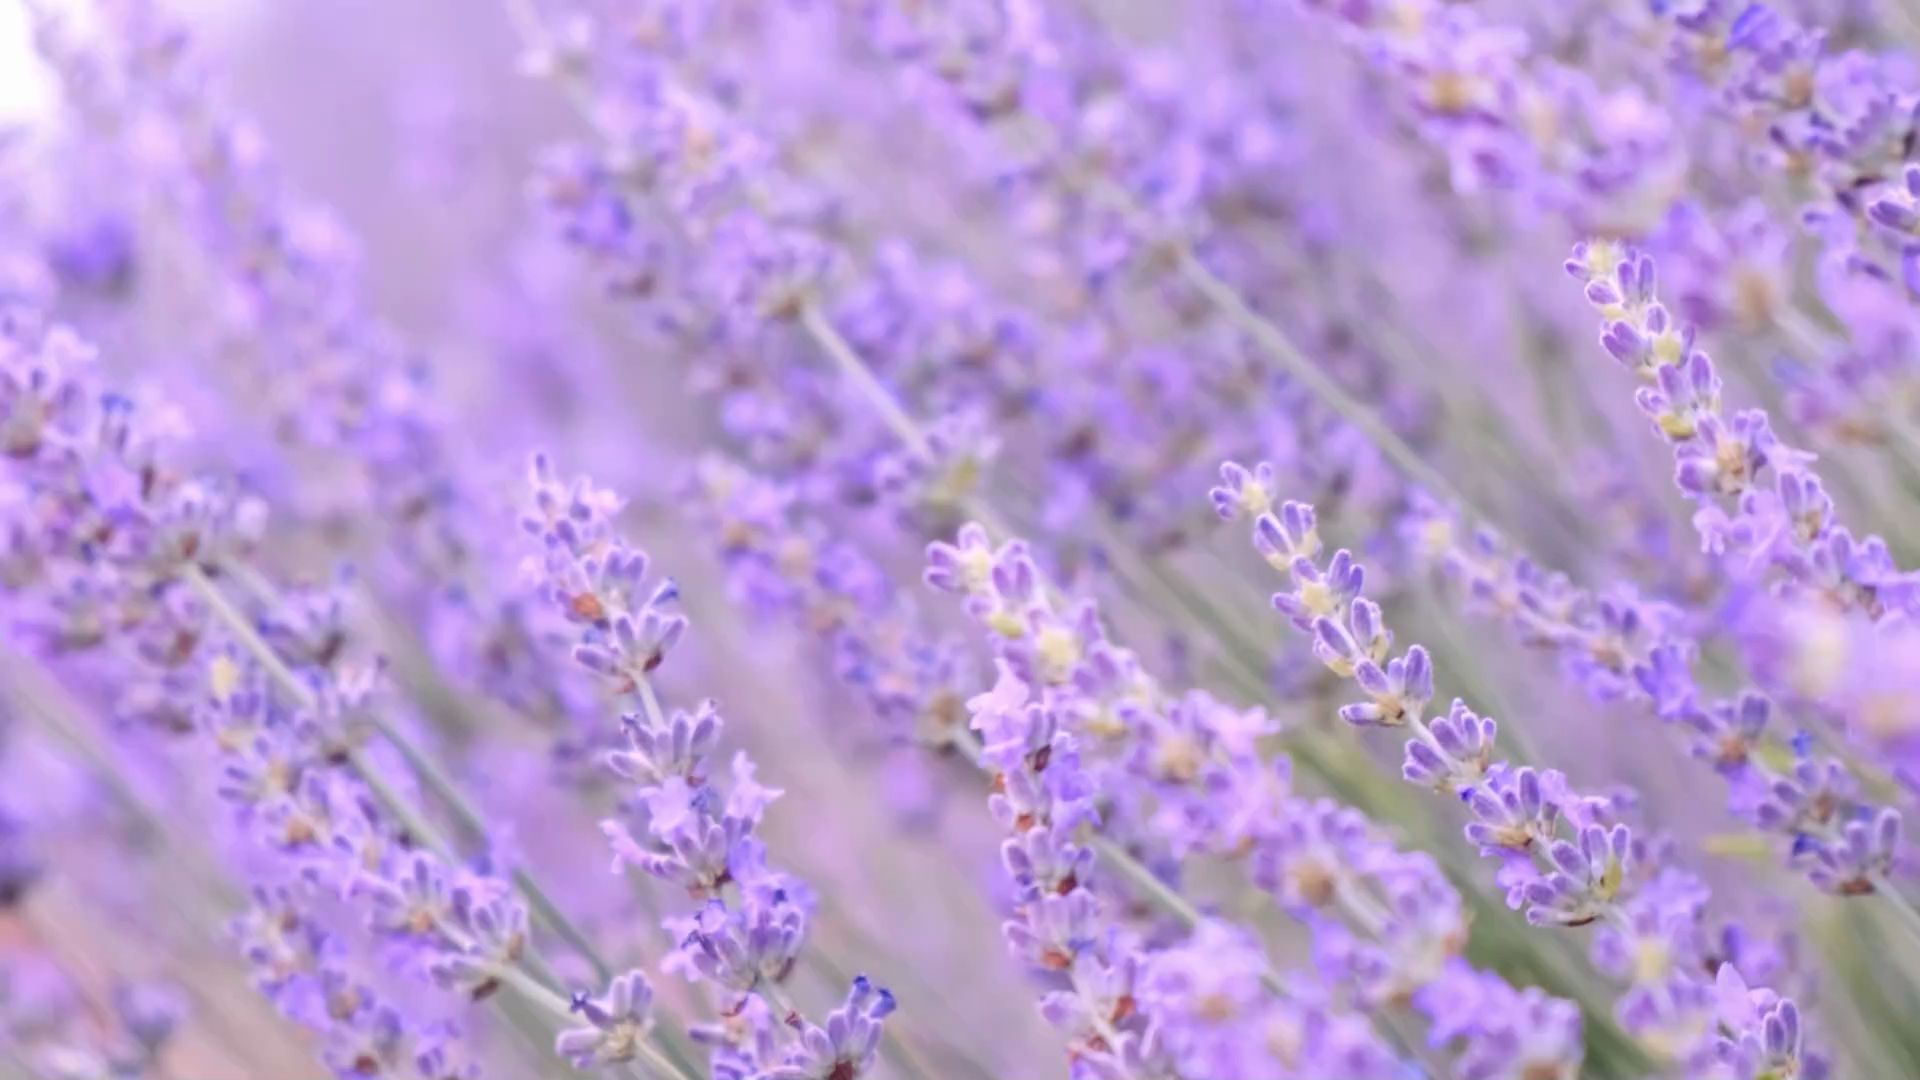 Lavendel: So hilft die Heilpflanze gegen Angstzustände